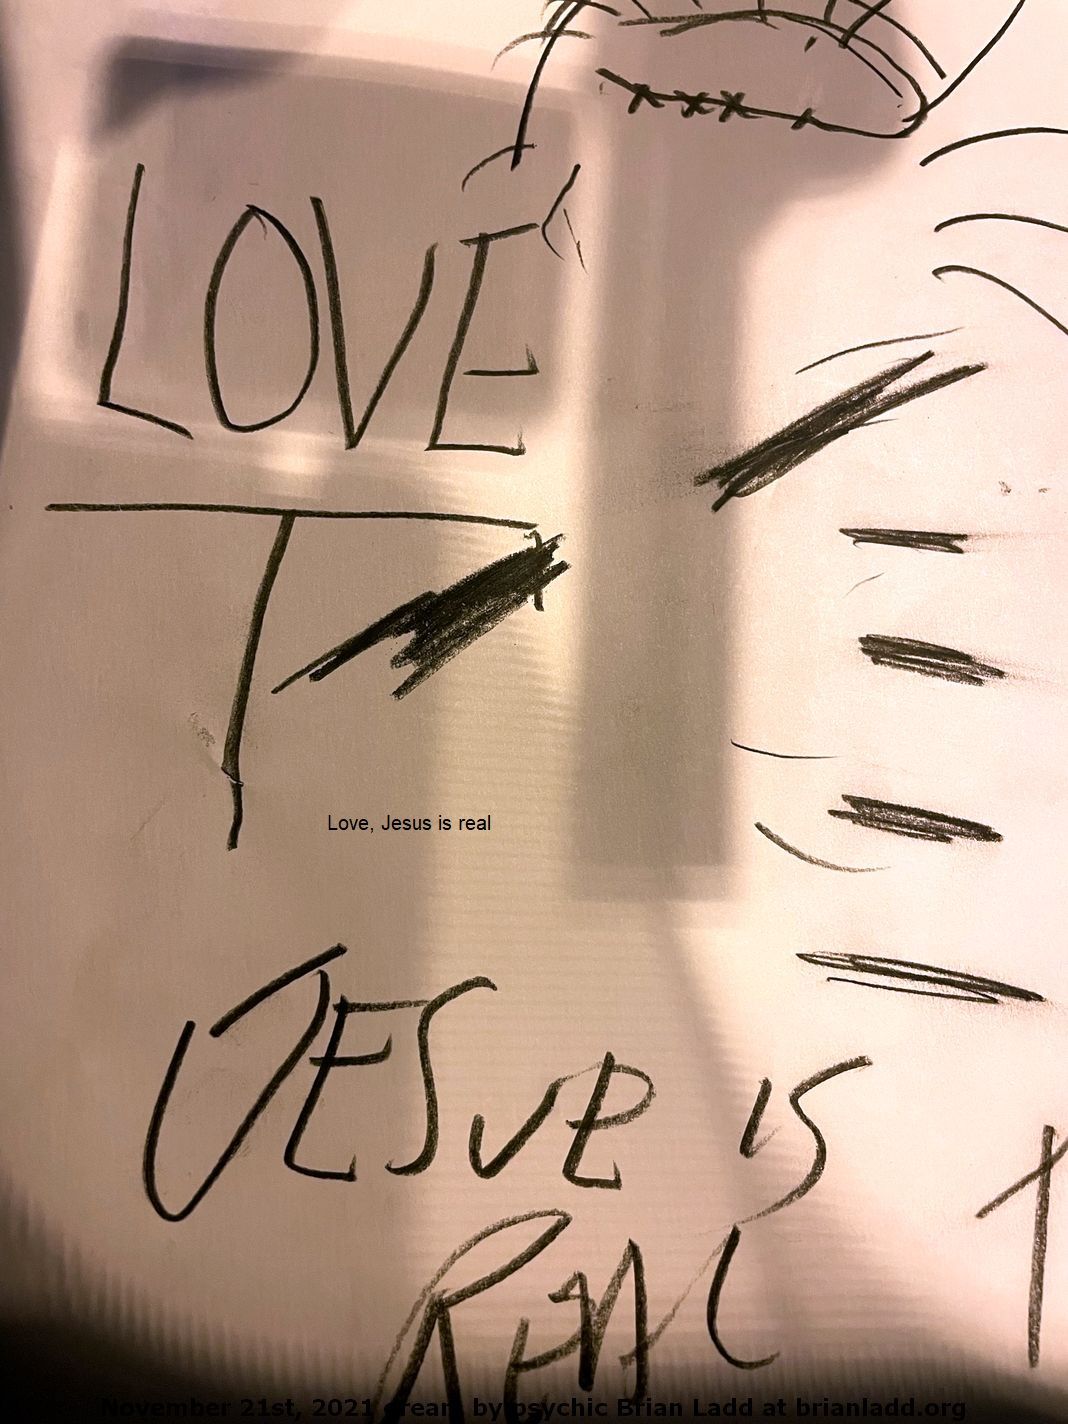 20 Nov 2021 8  Love, Jesus is real...
Love, Jesus is real.
